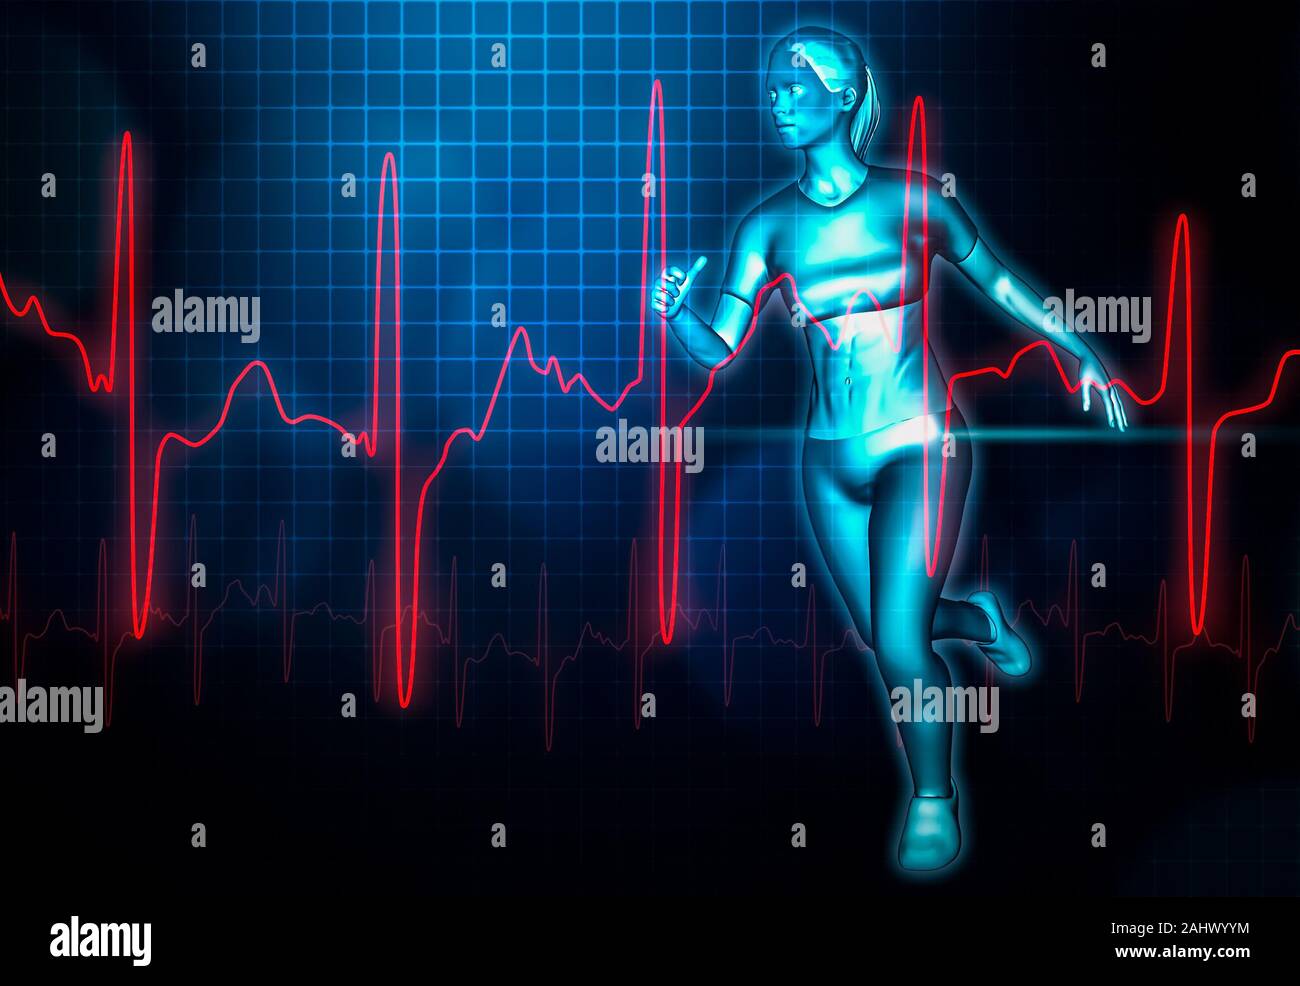 Weibliche ausgeführt und heartbeat Elektrokardiogramm oder EKG Kurve 3D Rendering Illustration. Sport, Gesundheit, Medizin, Gesundheit, Wissenschaft, Wellness, Aufwand c Stockfoto